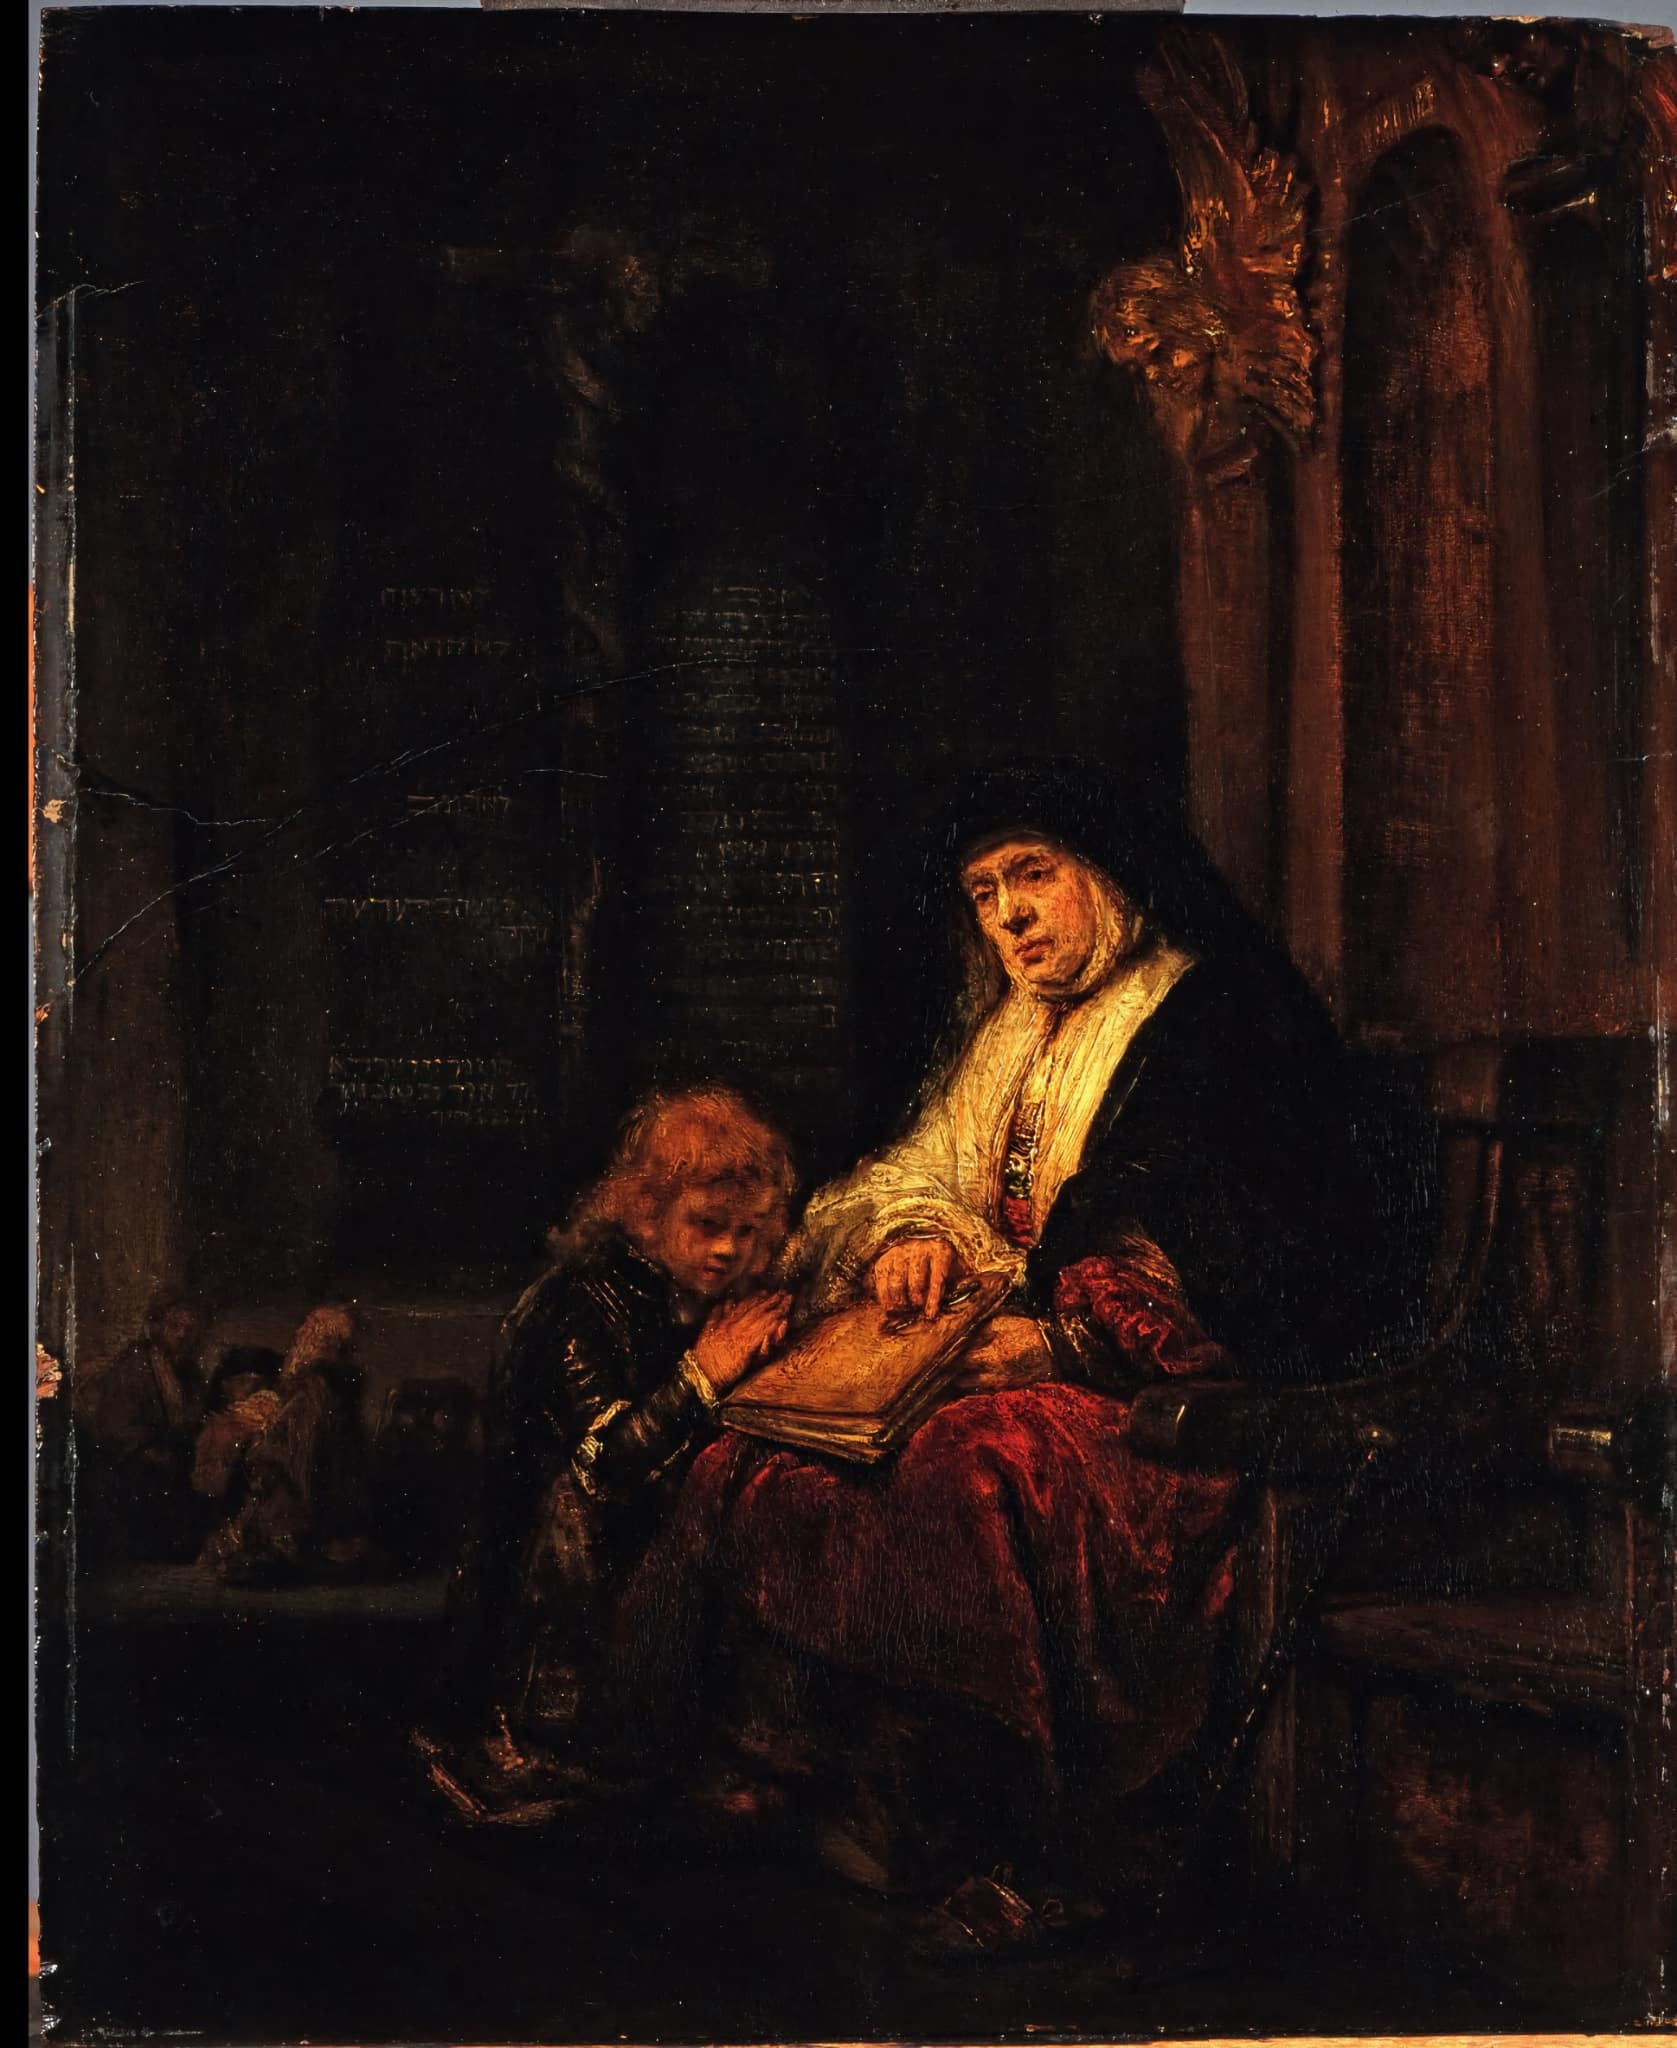 Rembrandt (nebo jeho některý žák): Chana a Samuel v kostele (1650) | Zdroj Wikimedia Commons